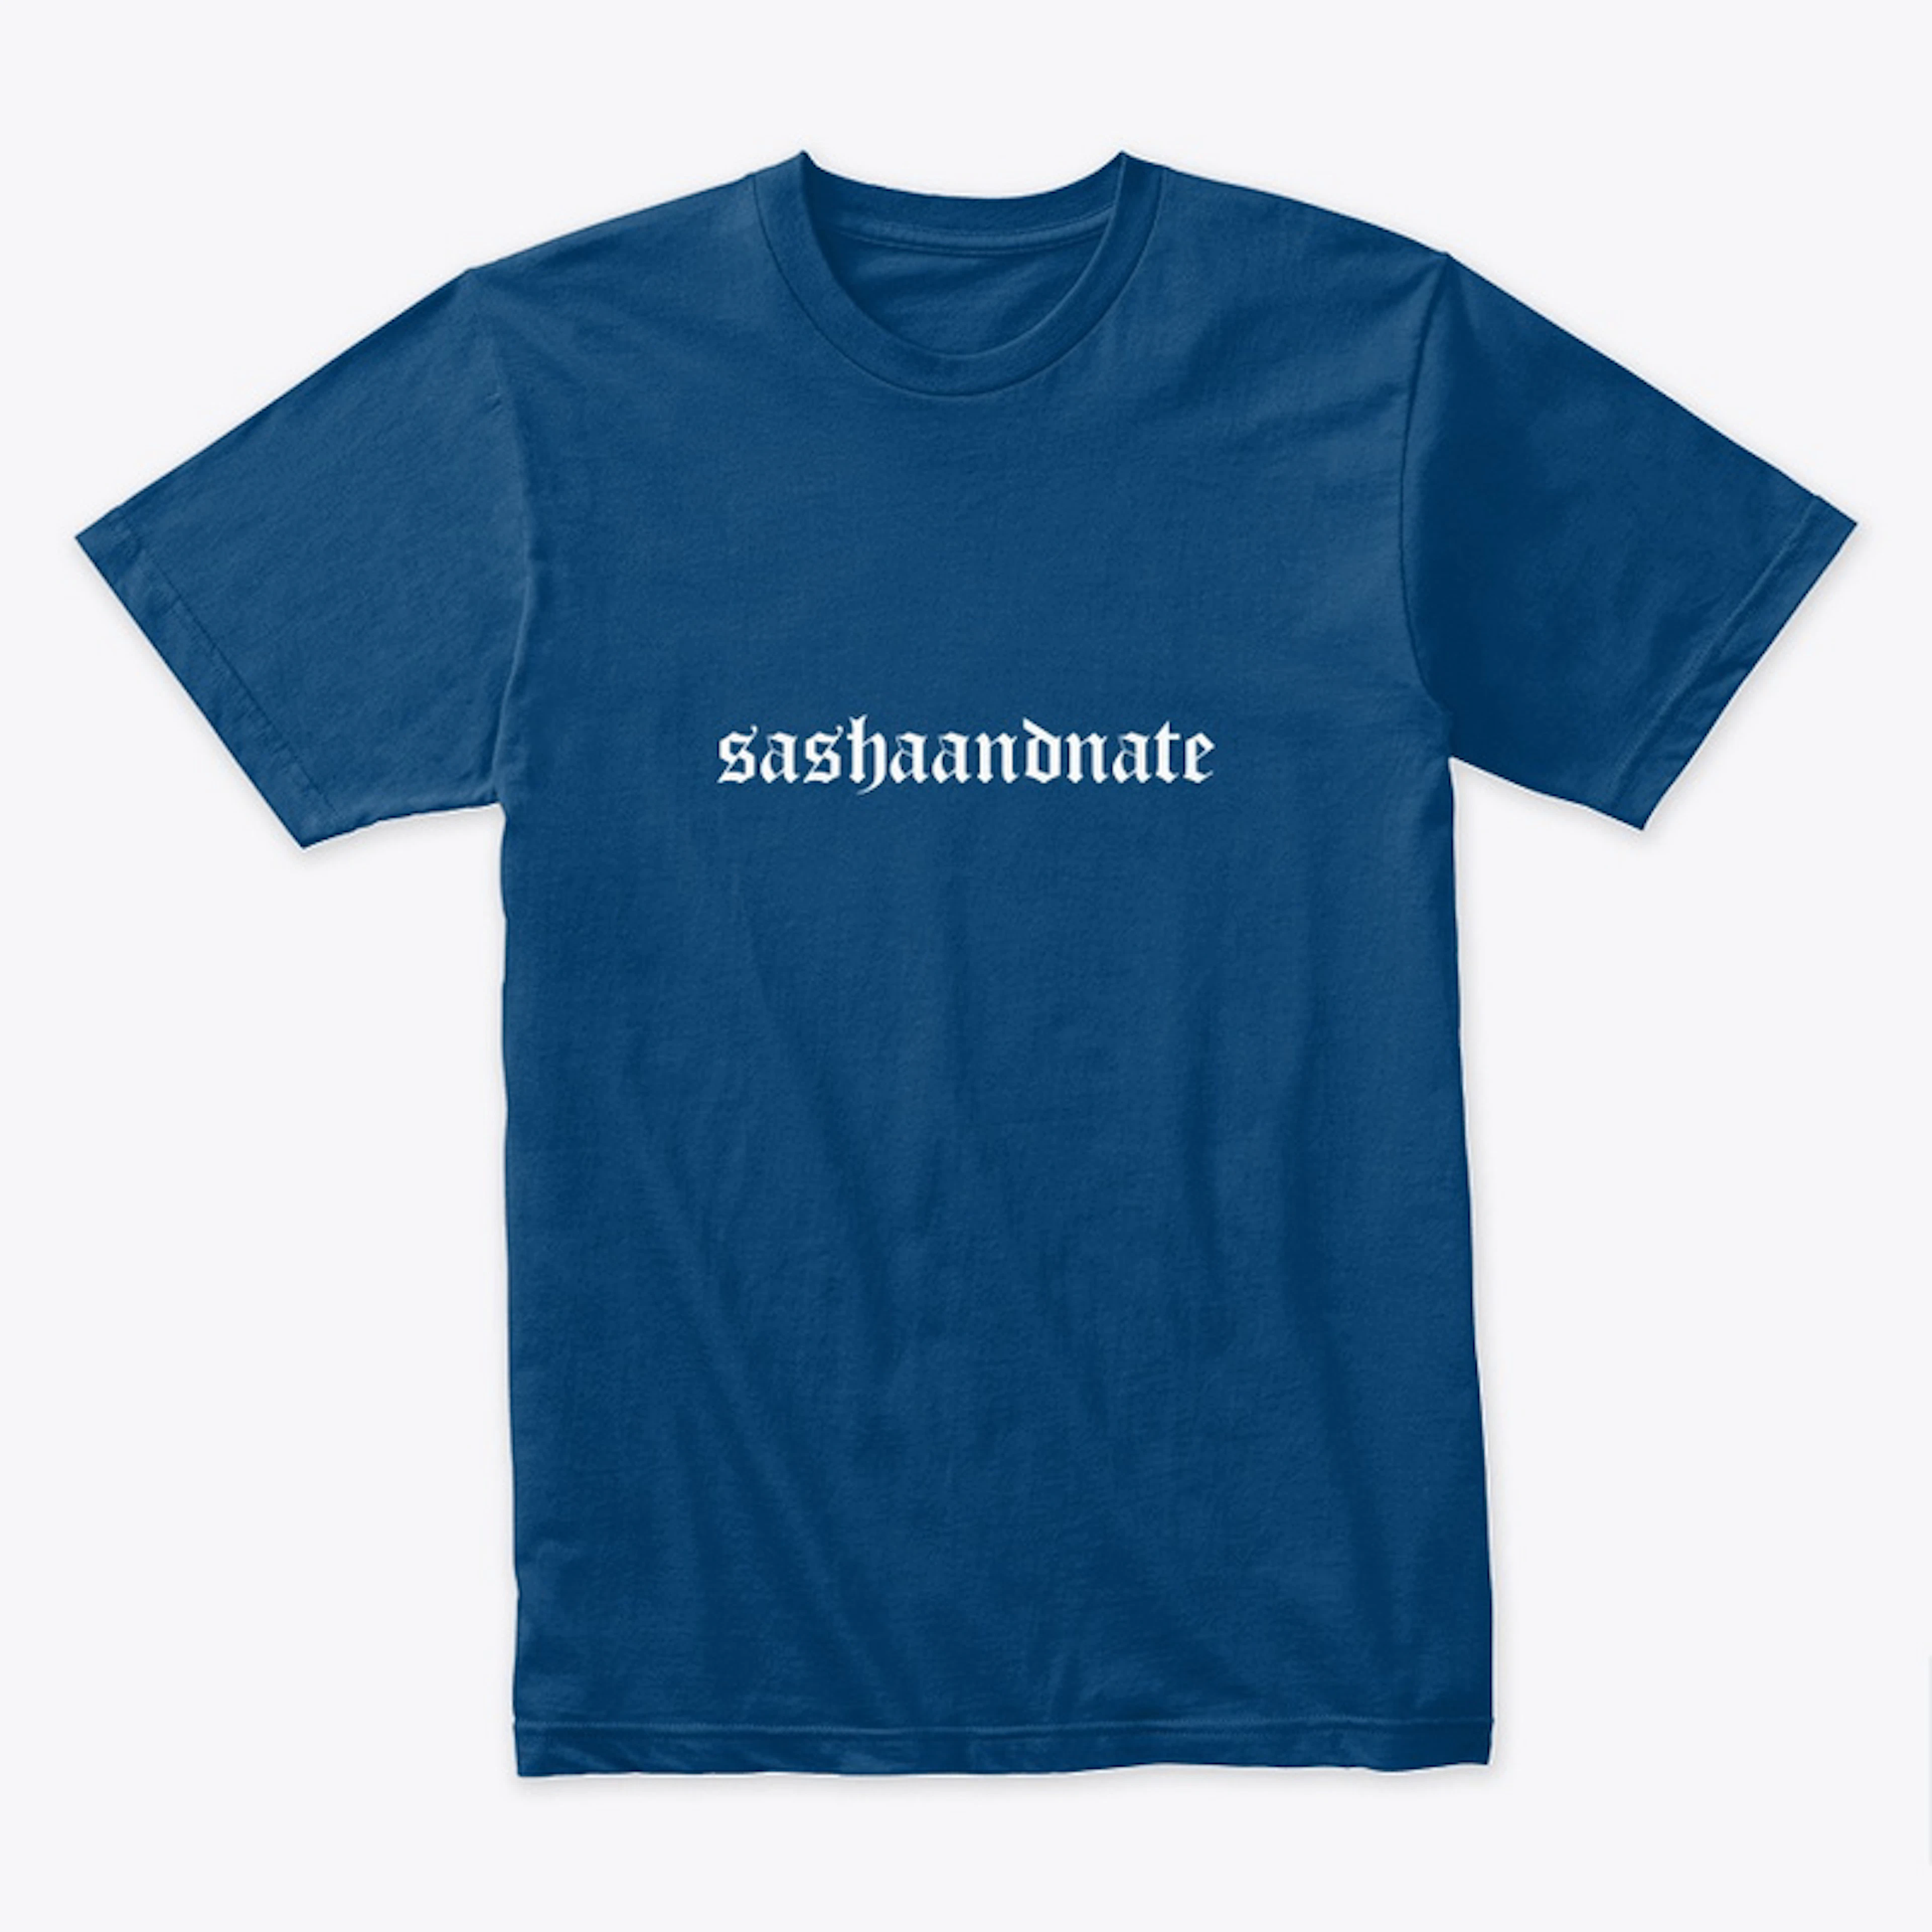 sashaandnate T-Shirt